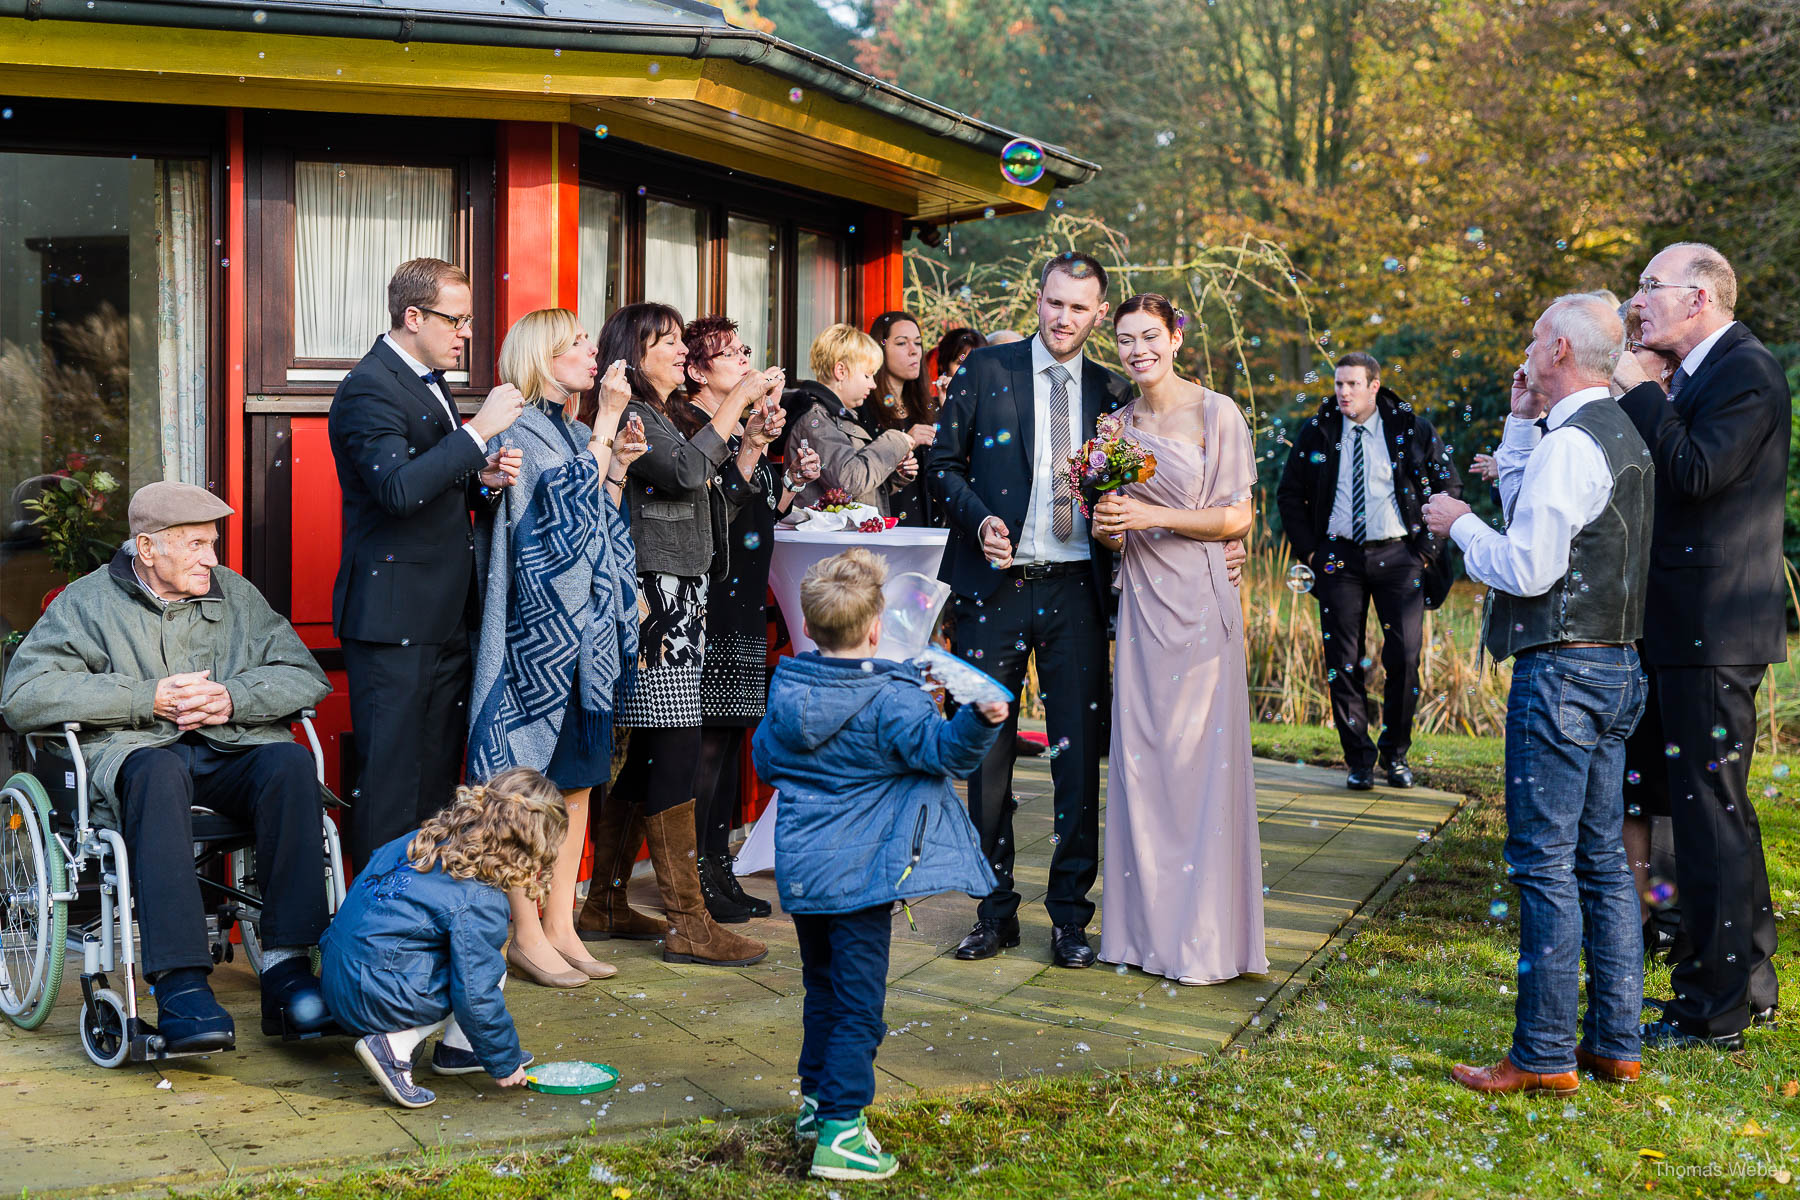 Gratulation der Gäste nach der Hochzeit auf dem Gut Sandheide in Hatten, Hochzeitsfotograf Thomas Weber aus Oldenburg